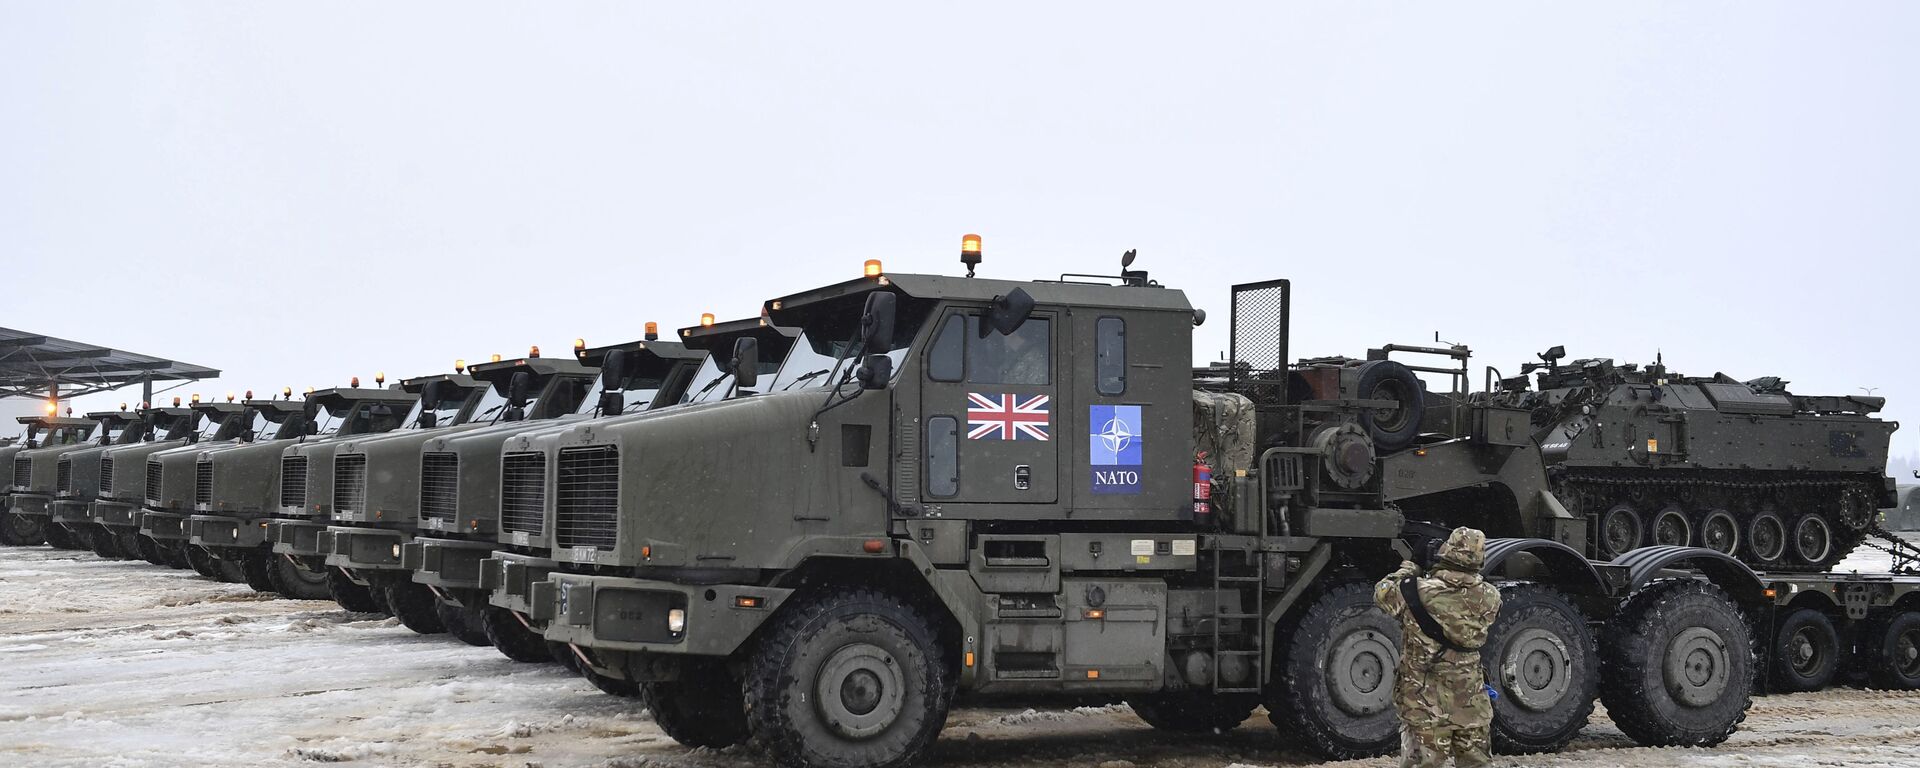 قوات الناتو على حدود روسيا - مدرعات تابعة لقوات الجيش البريطاني تصل إلى إستونيا 25 فبراير 2022 - سبوتنيك عربي, 1920, 04.03.2022